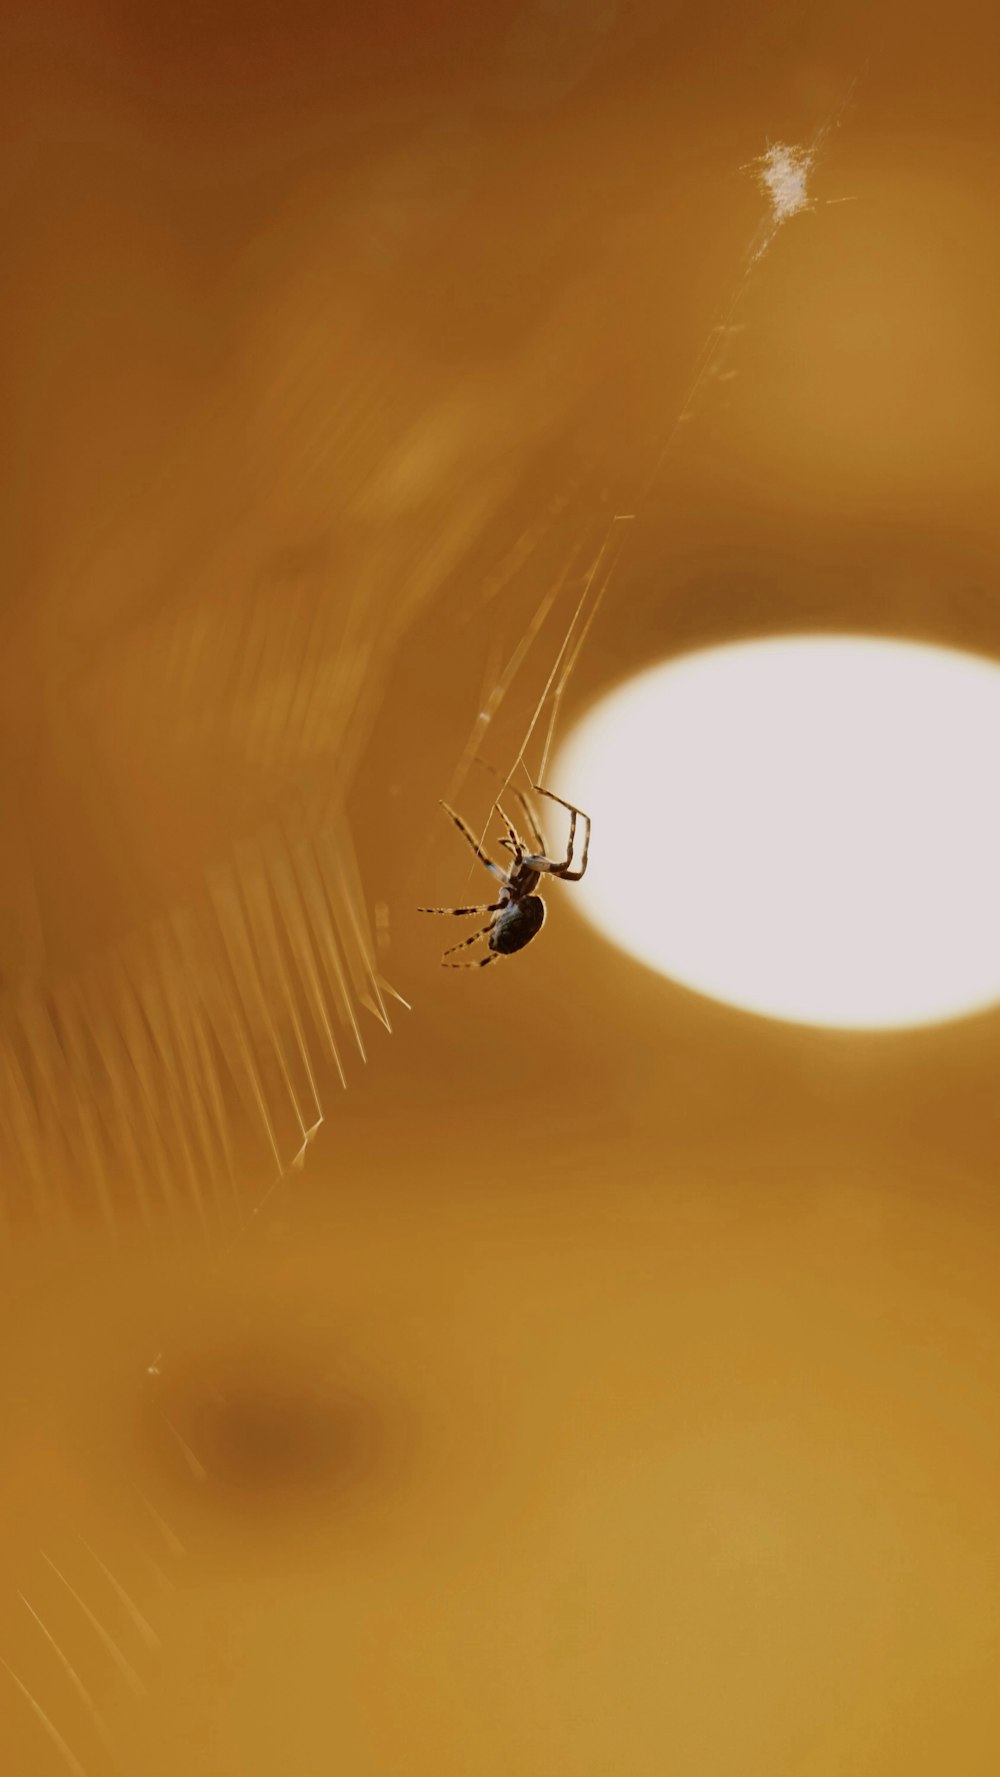 black spider on spider web